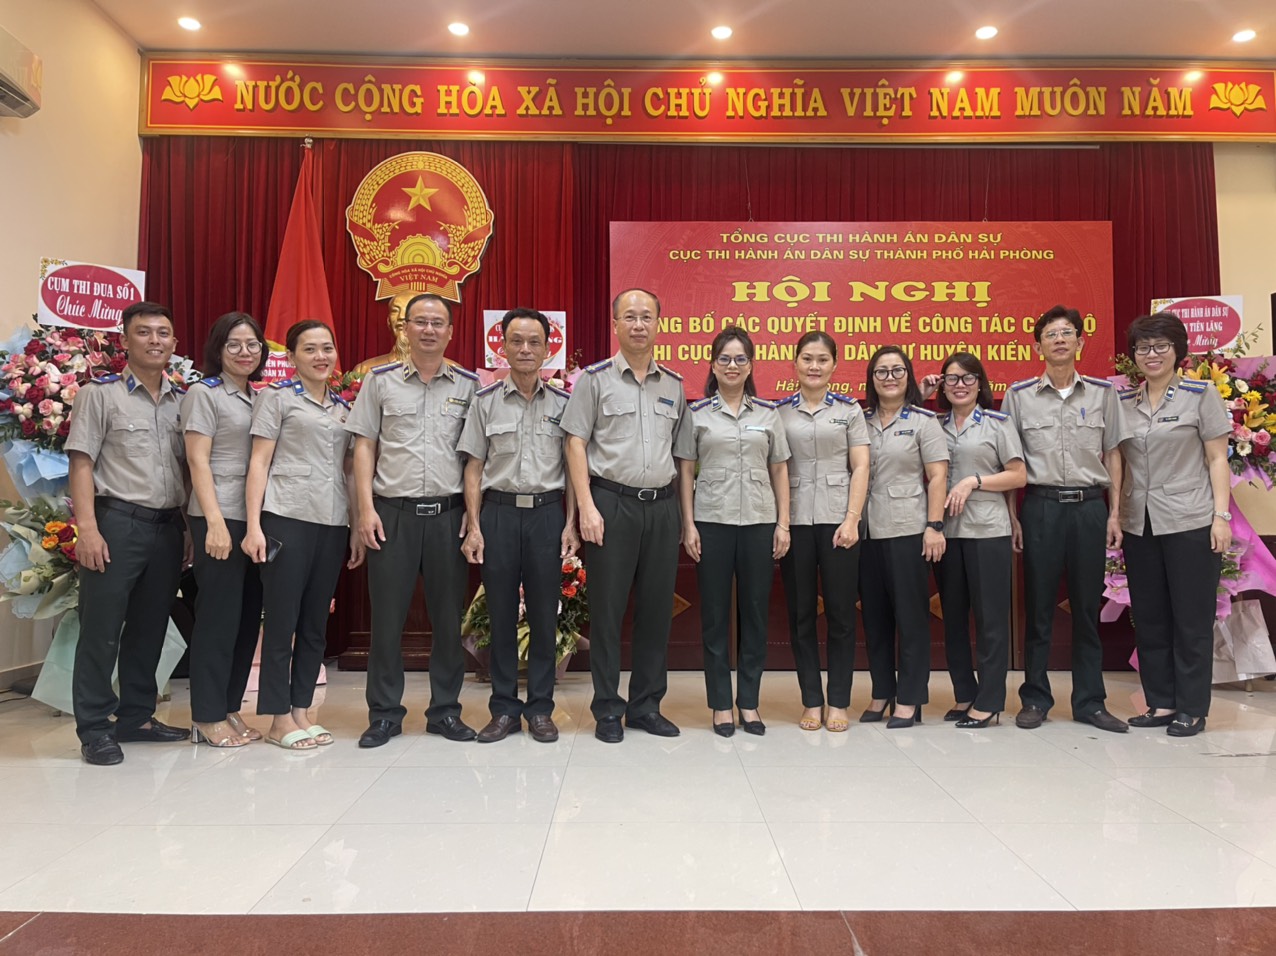 Cục Thi hành án dân sự thành phố Hải Phòng công bố các quyết định về công tác tổ chức cán bộ tại Chi cục THADS H. Kiến Thụy